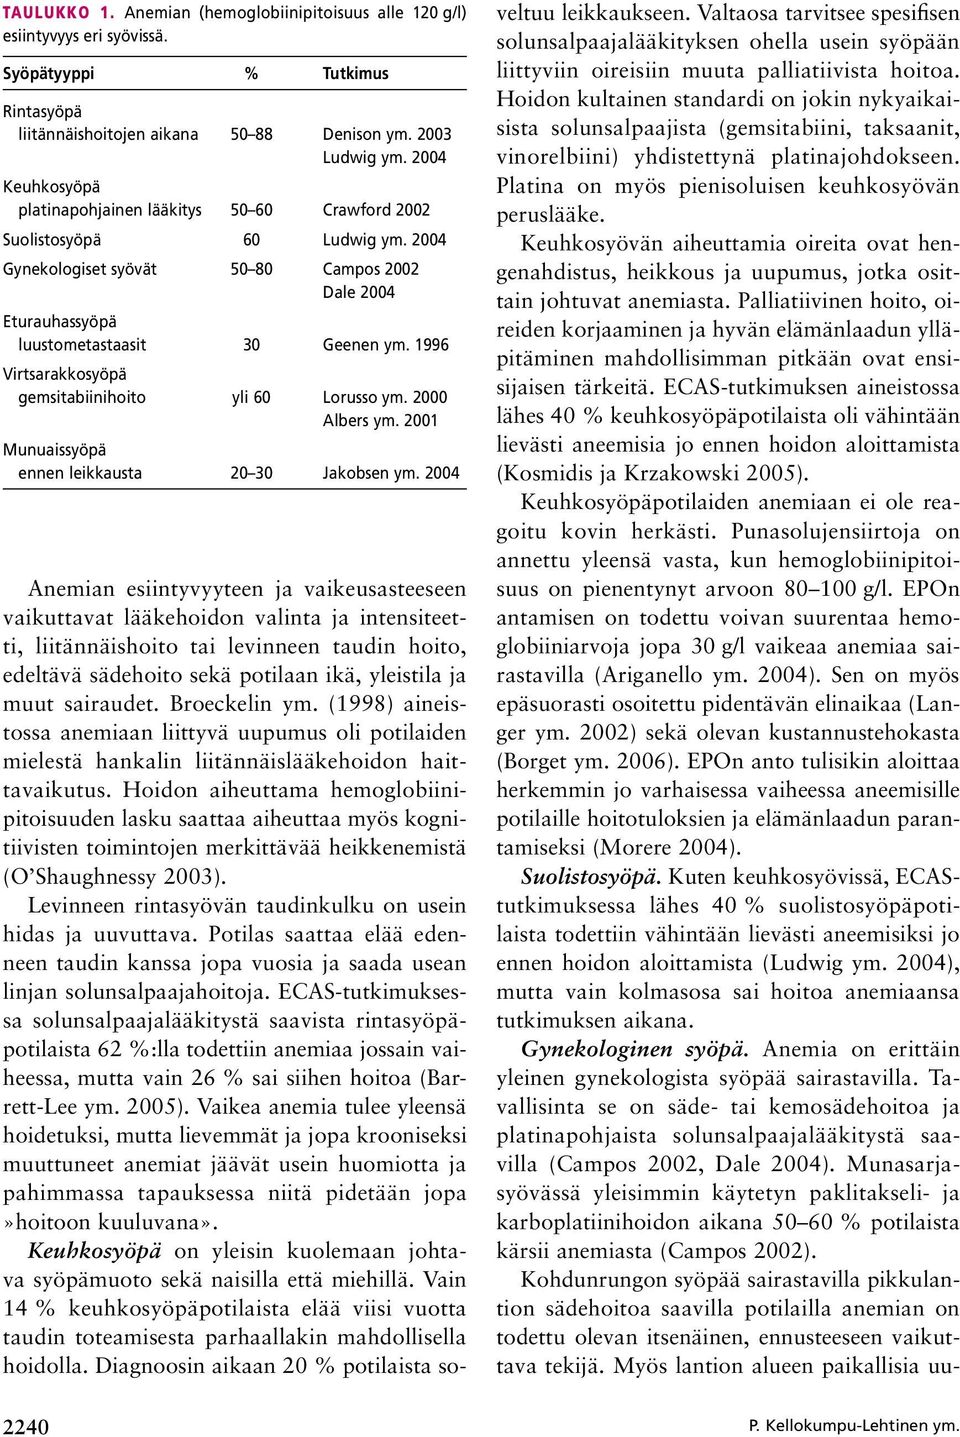 1996 Virtsarakkosyöpä gemsitabiinihoito yli 60 Lorusso ym. 2000 albers ym. 2001 Munuaissyöpä ennen leikkausta 20 30 Jakobsen ym.